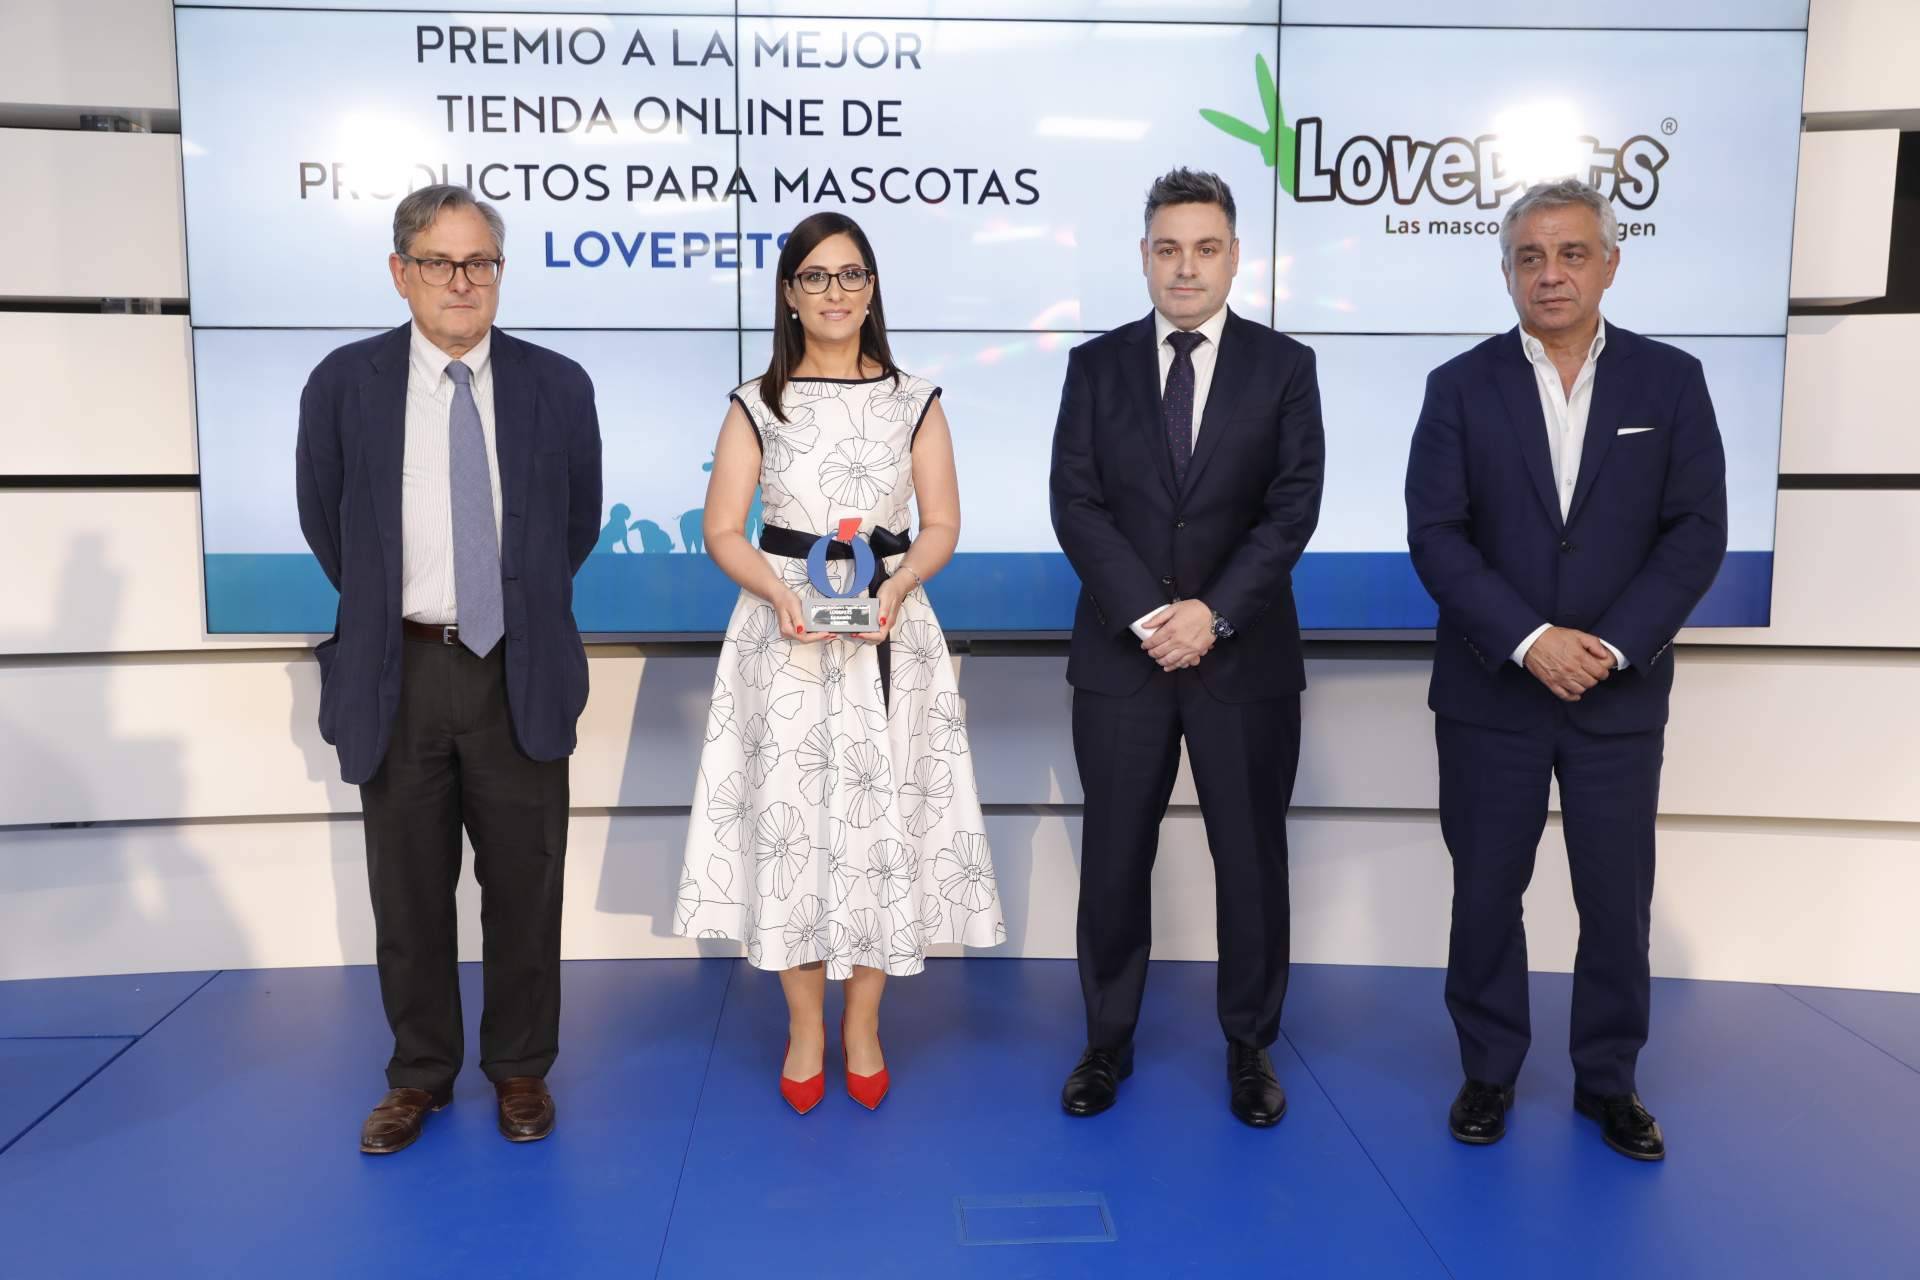 Love Pets recibe el premio a la mejor tienda online en España de productos para mascotas